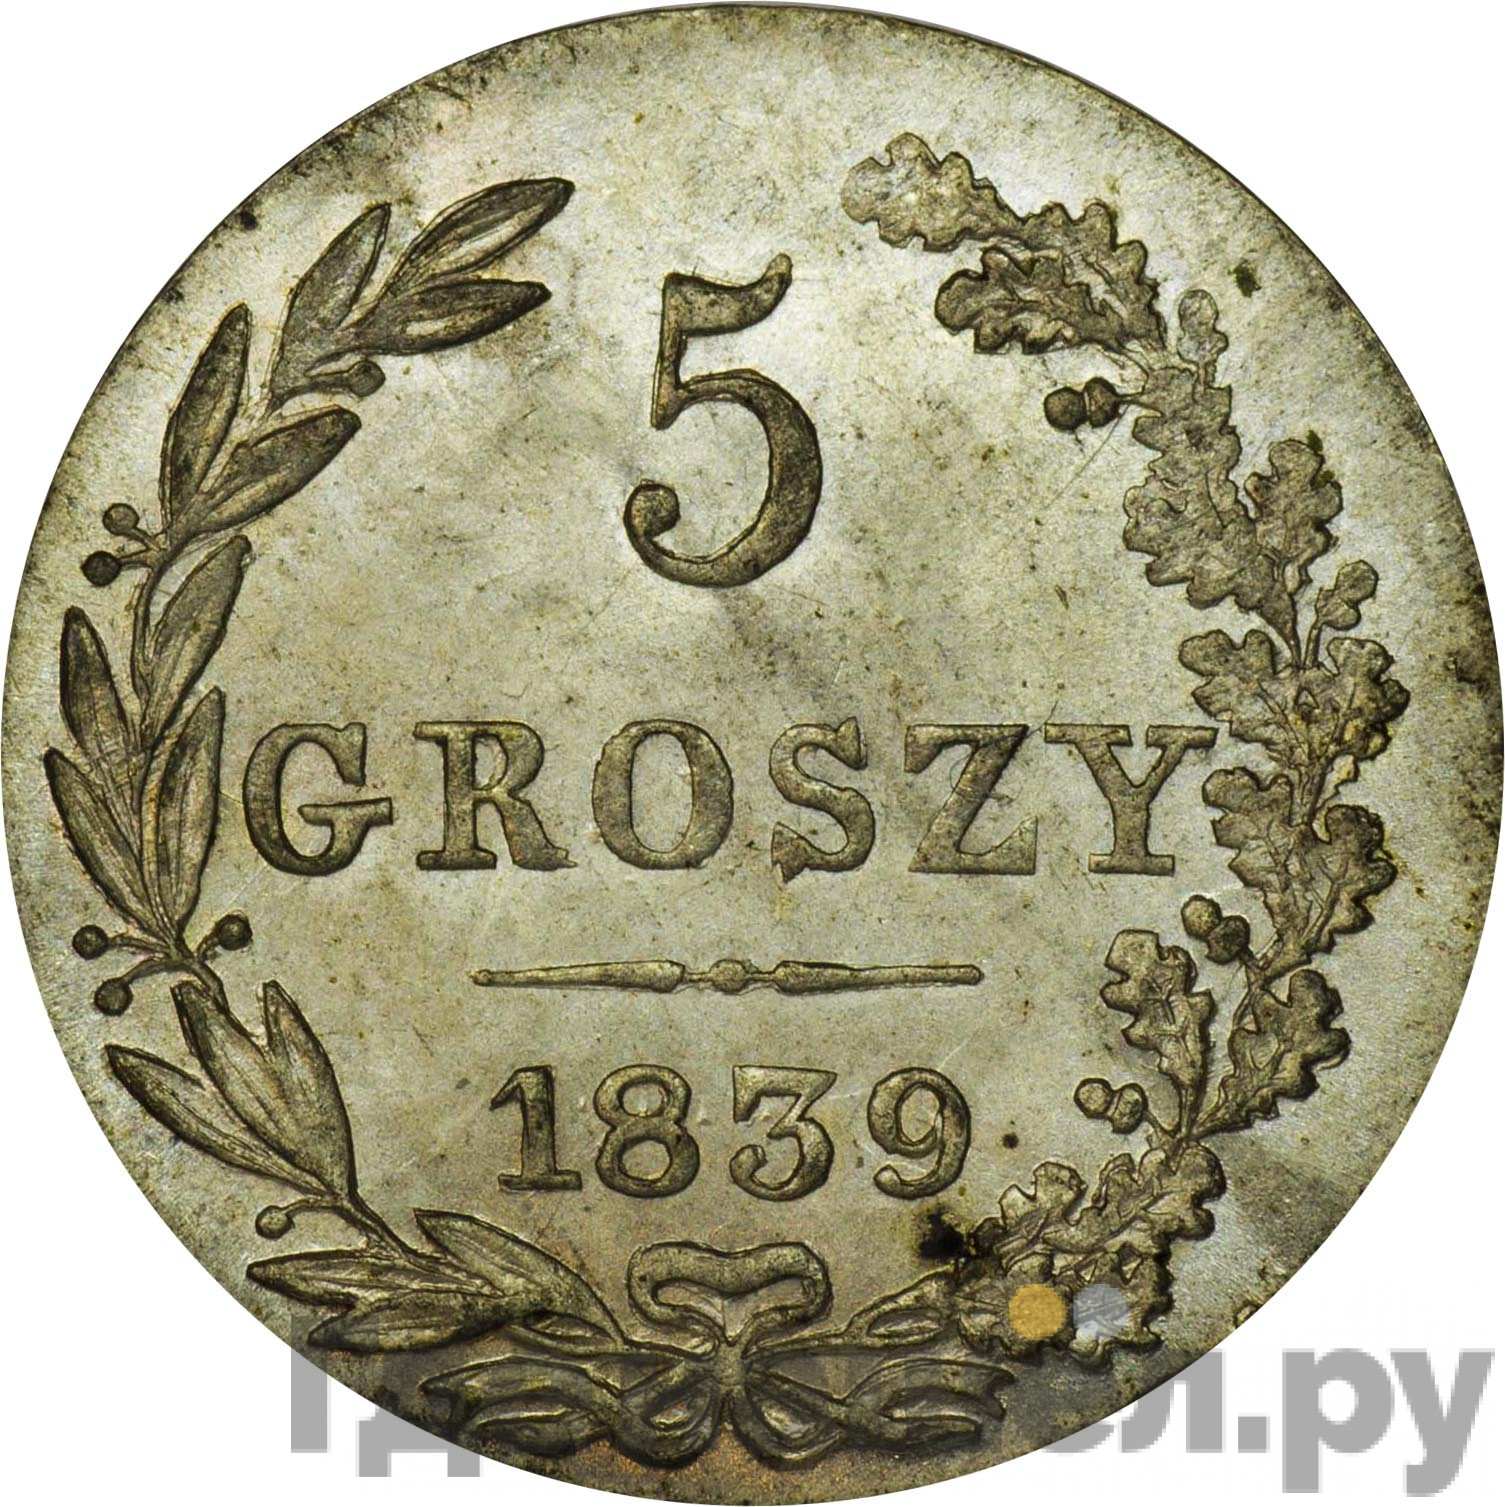 5 грошей 1839 года